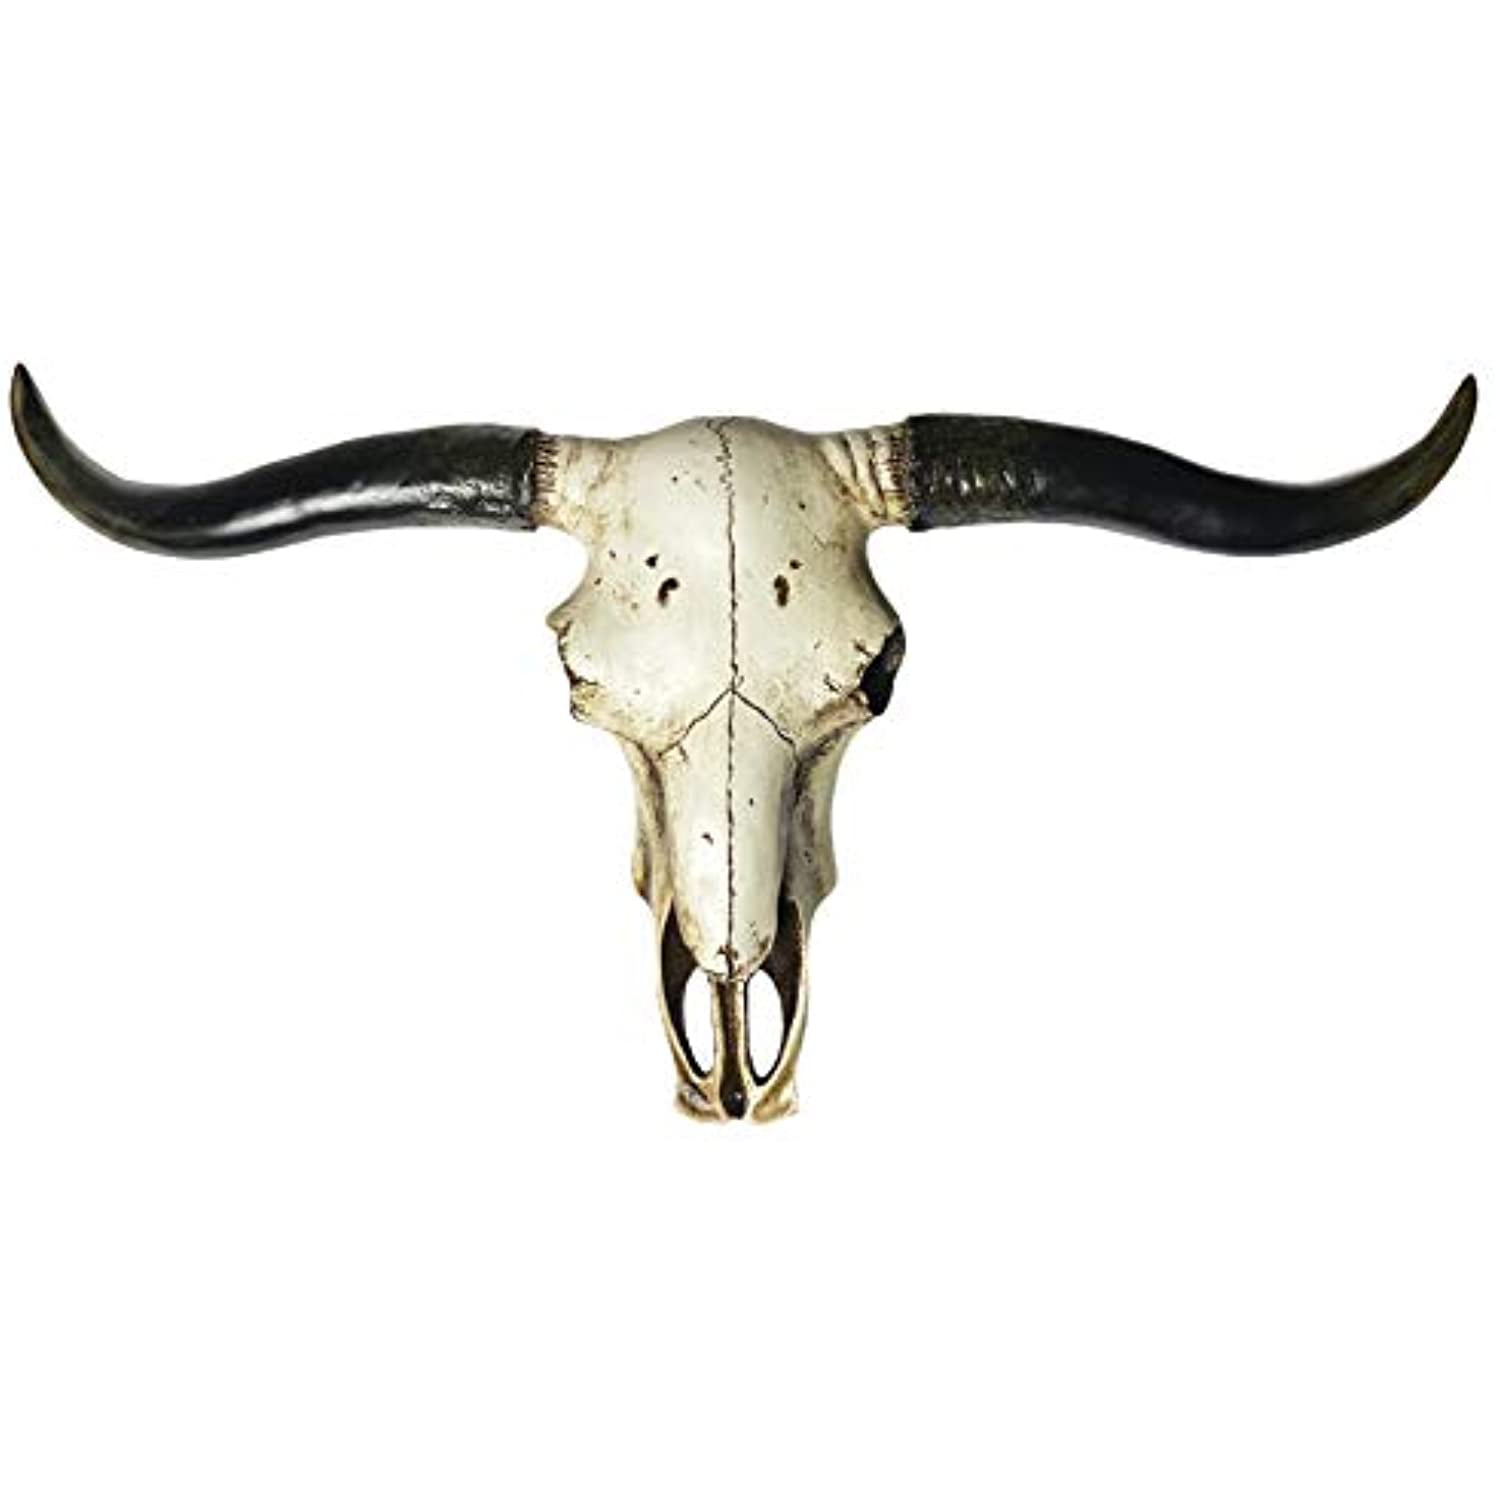 MOUNTED STEER HORN 4' feet  TO 4' 5" LONGHORN COW BULL LONG HORNS ONE SET skull 